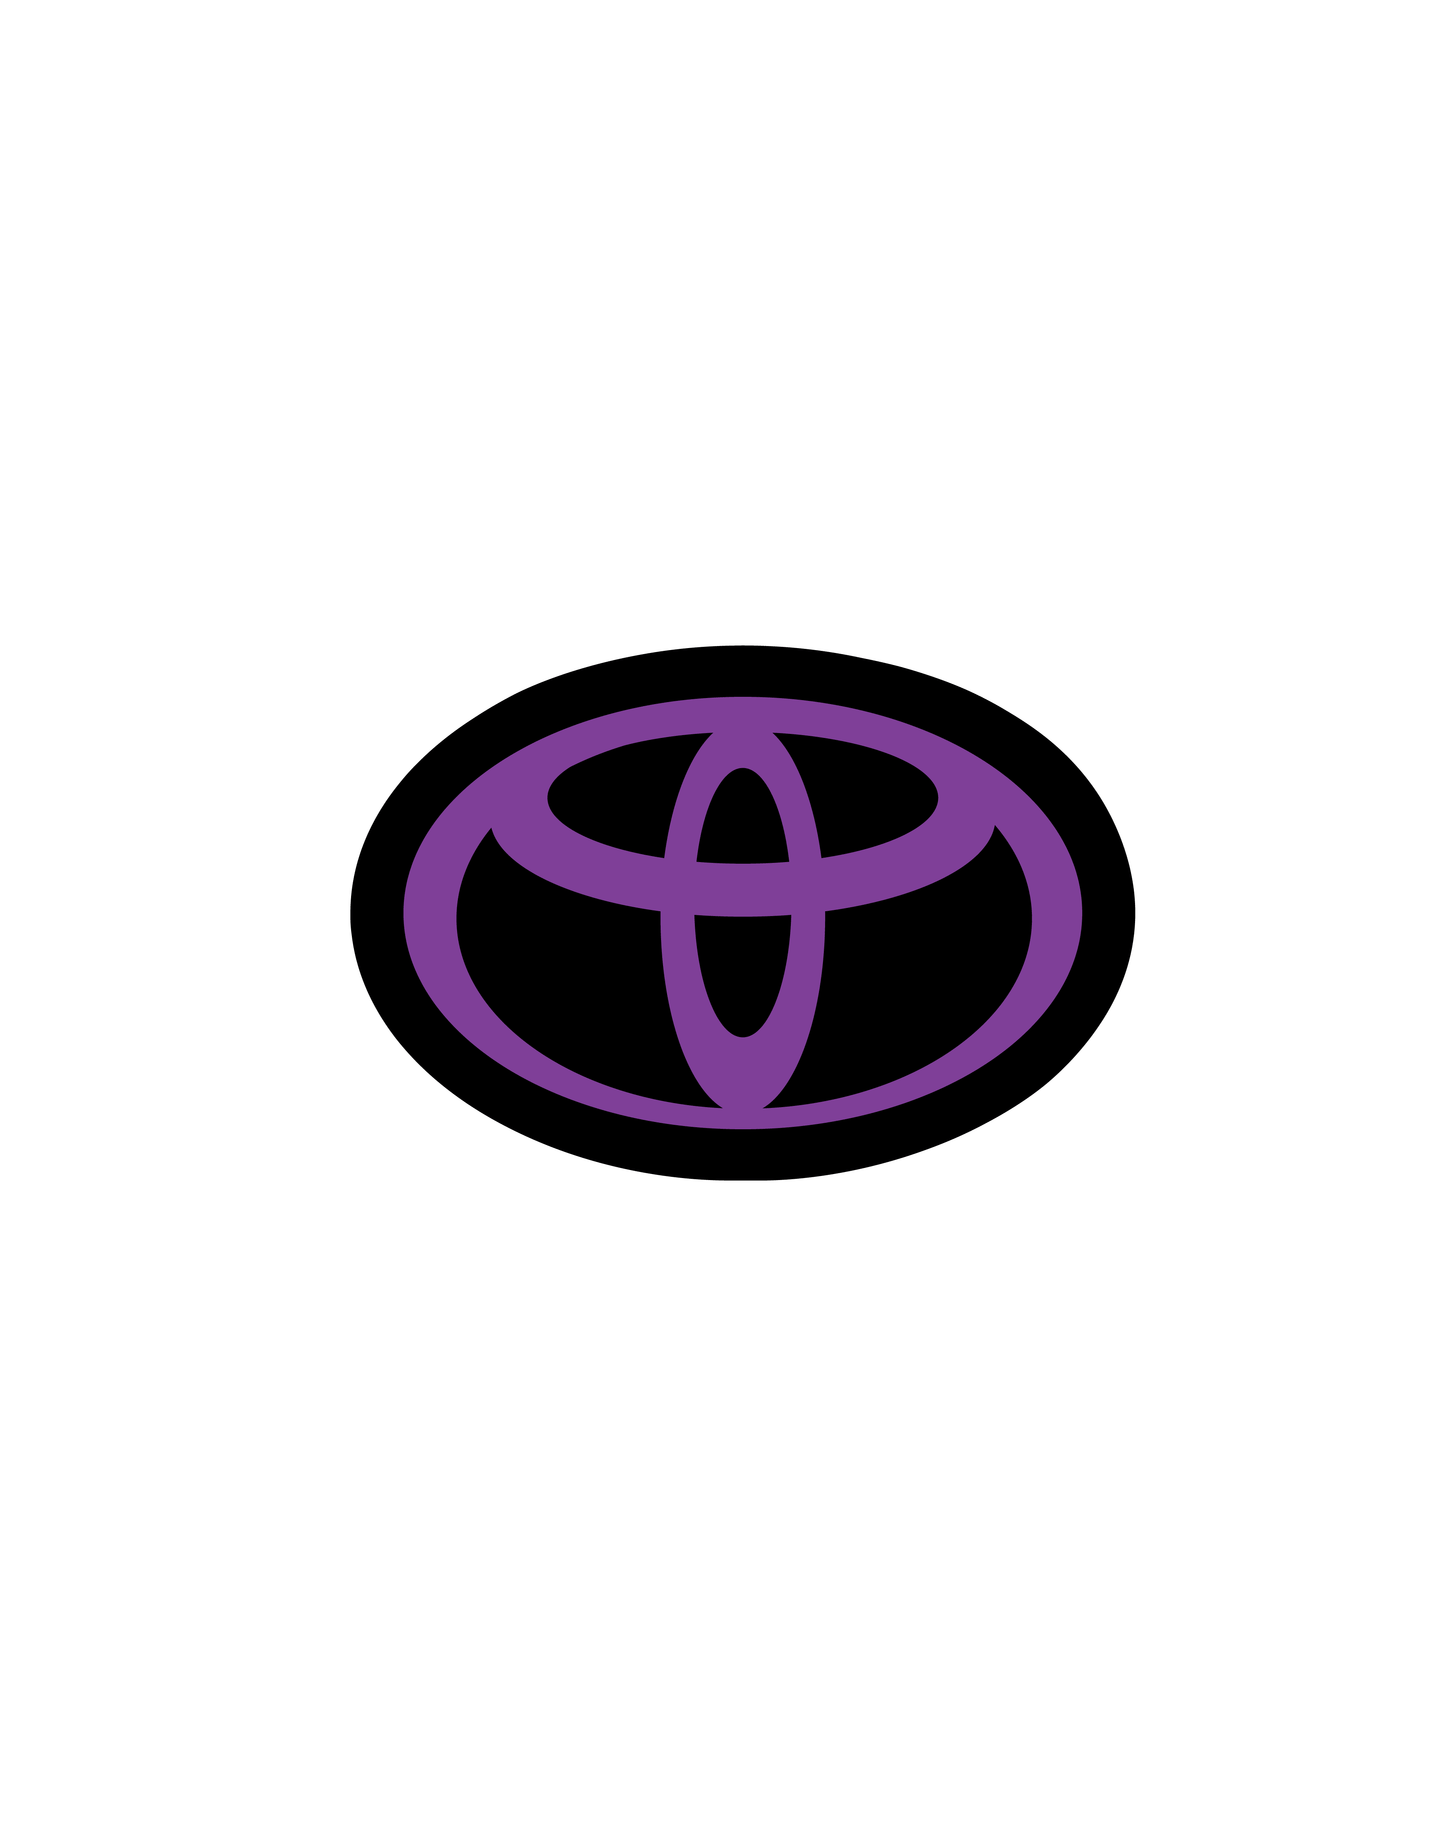 2018-2023 Toyota Tacoma Front Emblem Vinyl Overlay